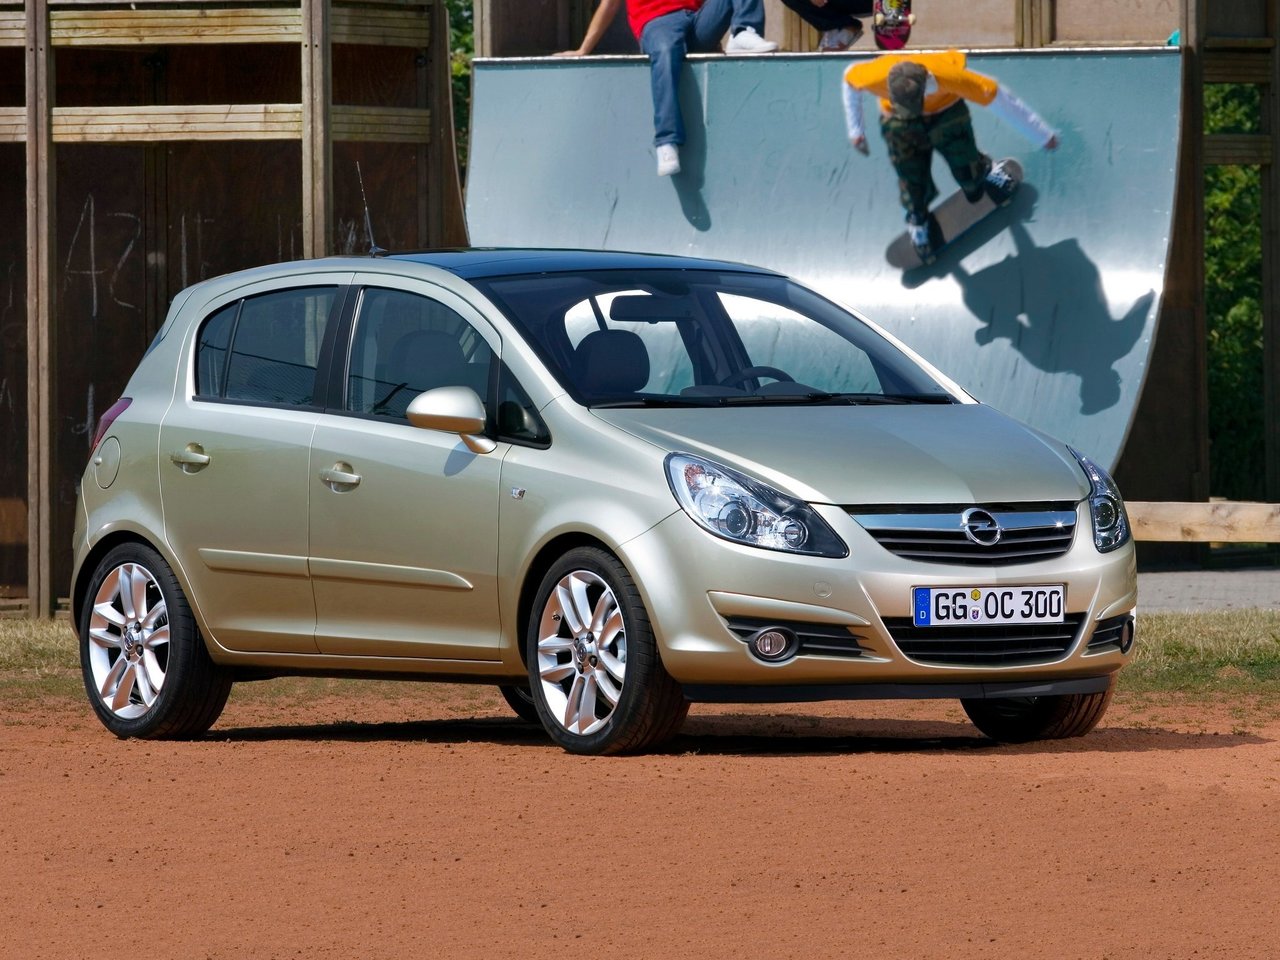 Снижаем расход Opel Corsa на топливо, устанавливаем ГБО